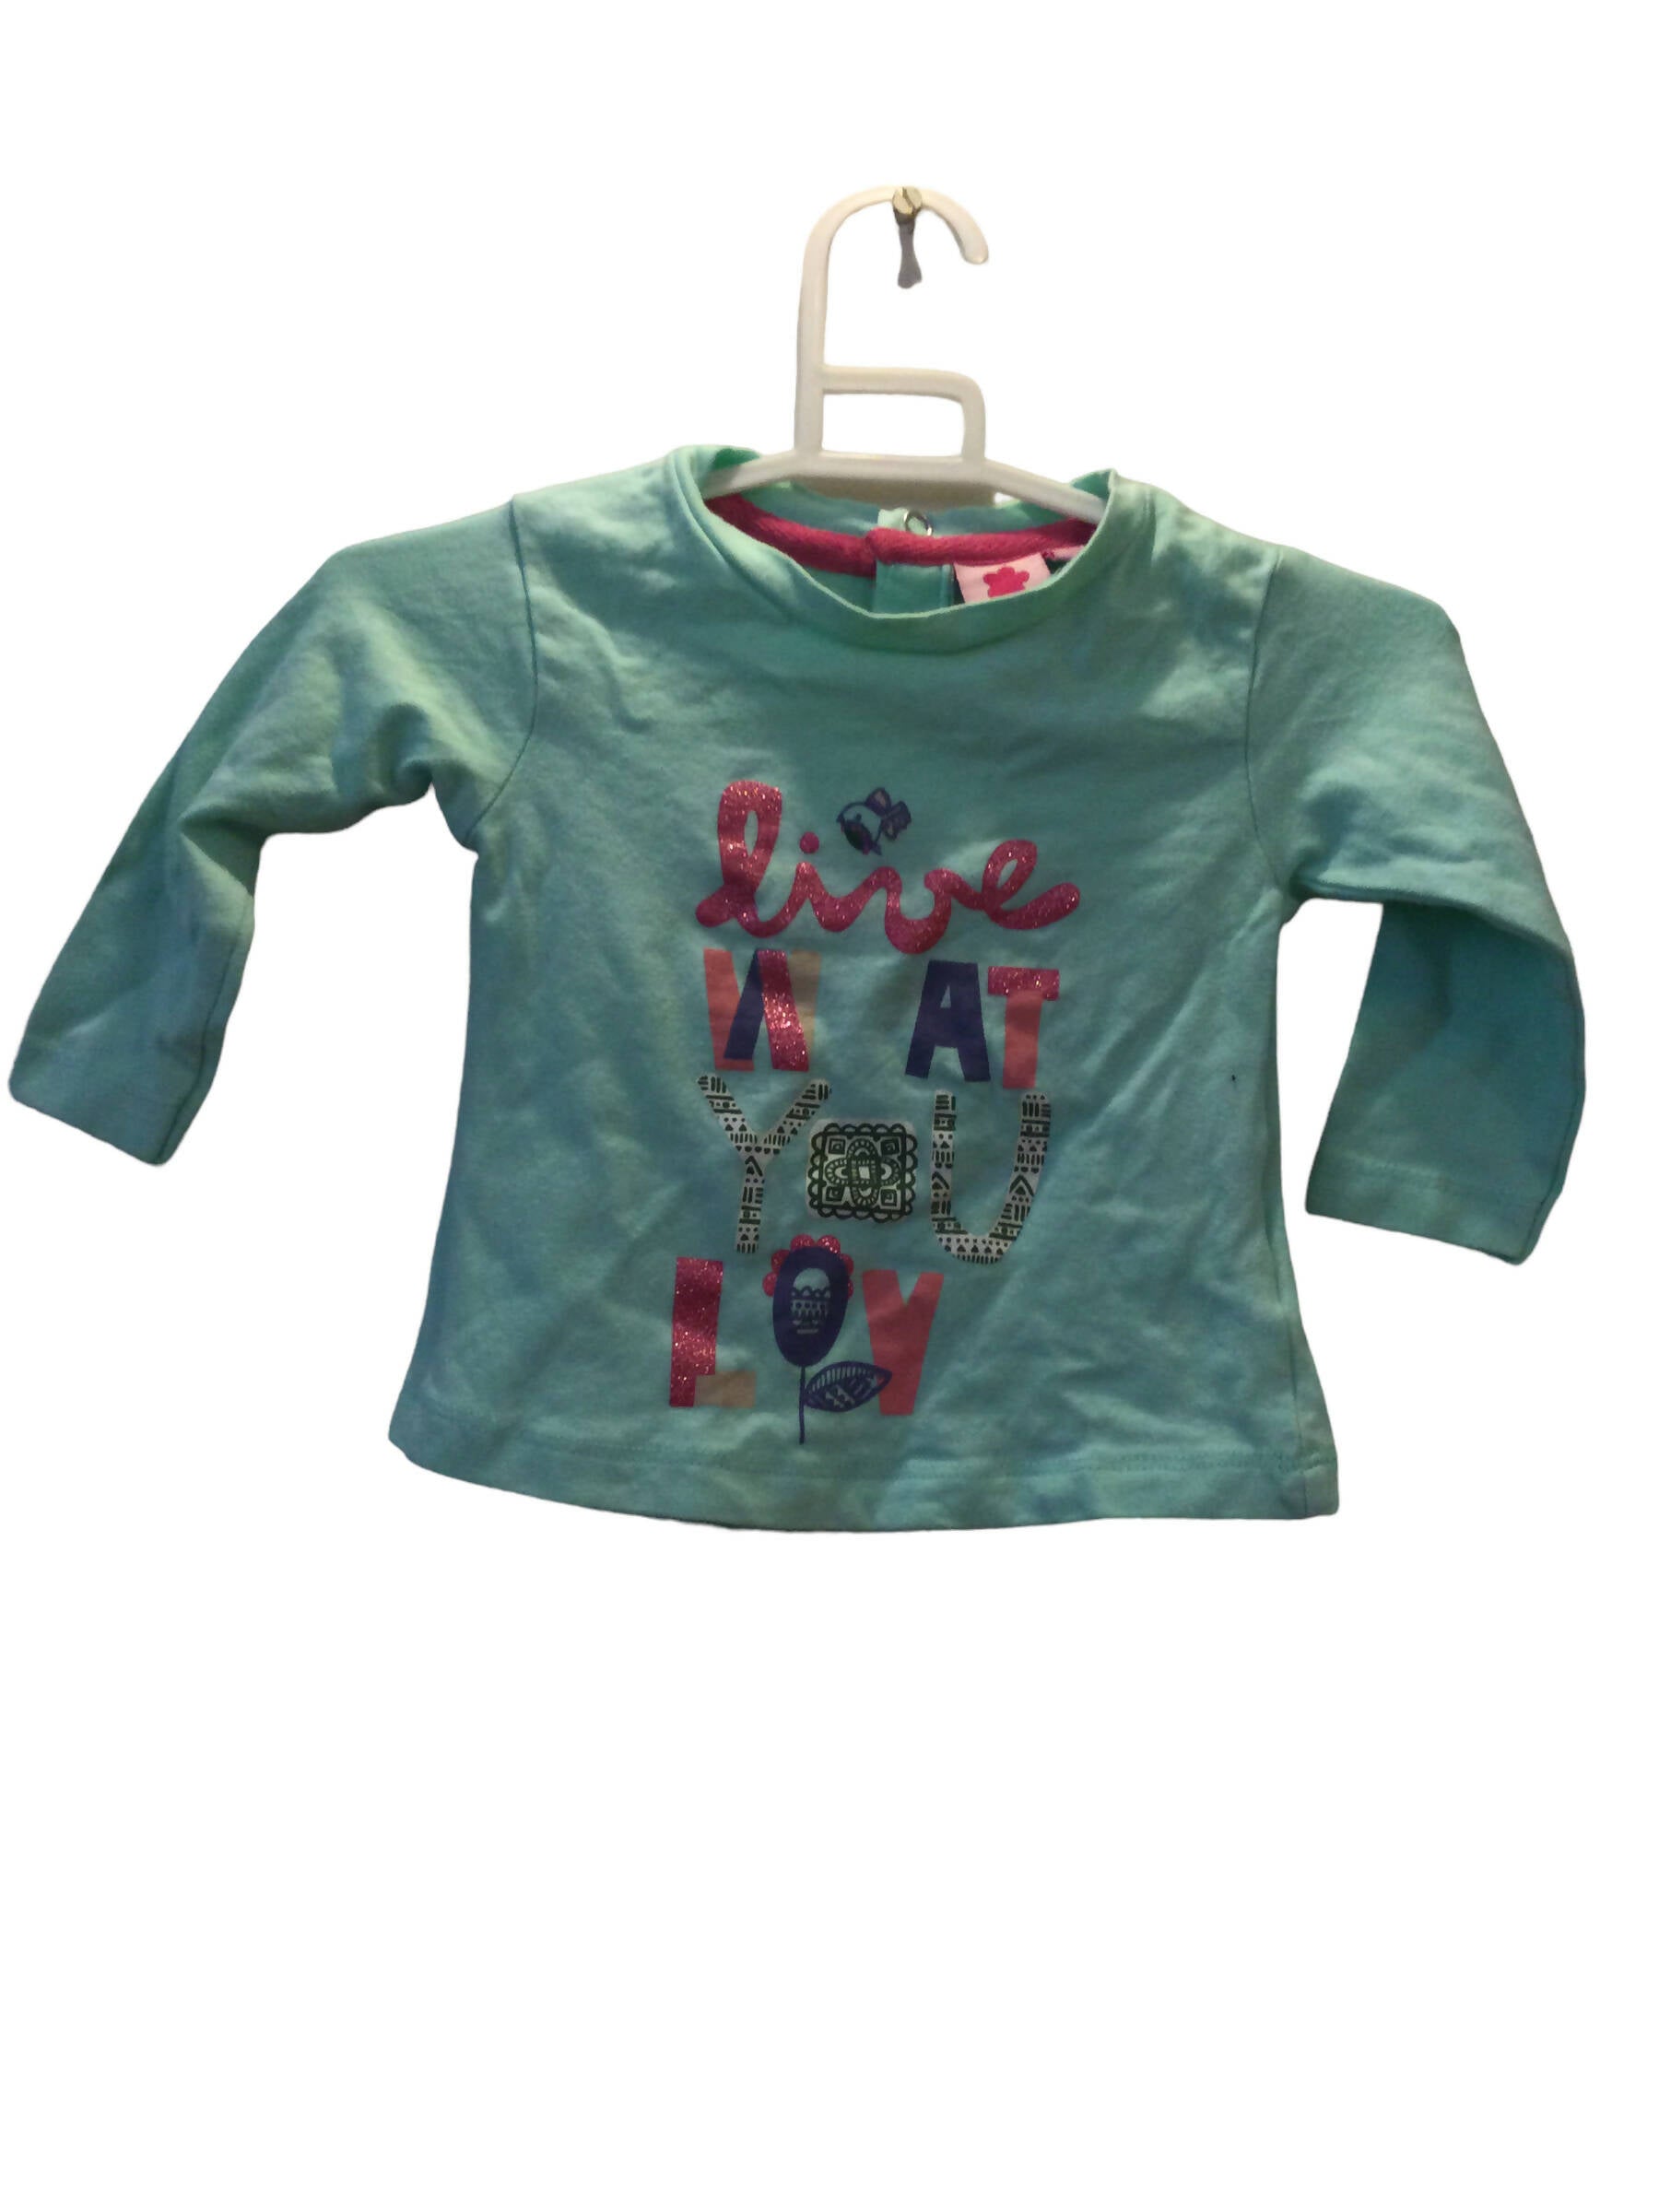 Juniors | Blue baby shop shirt (6-9 months) | Girls Tops & Shirts | Preloved